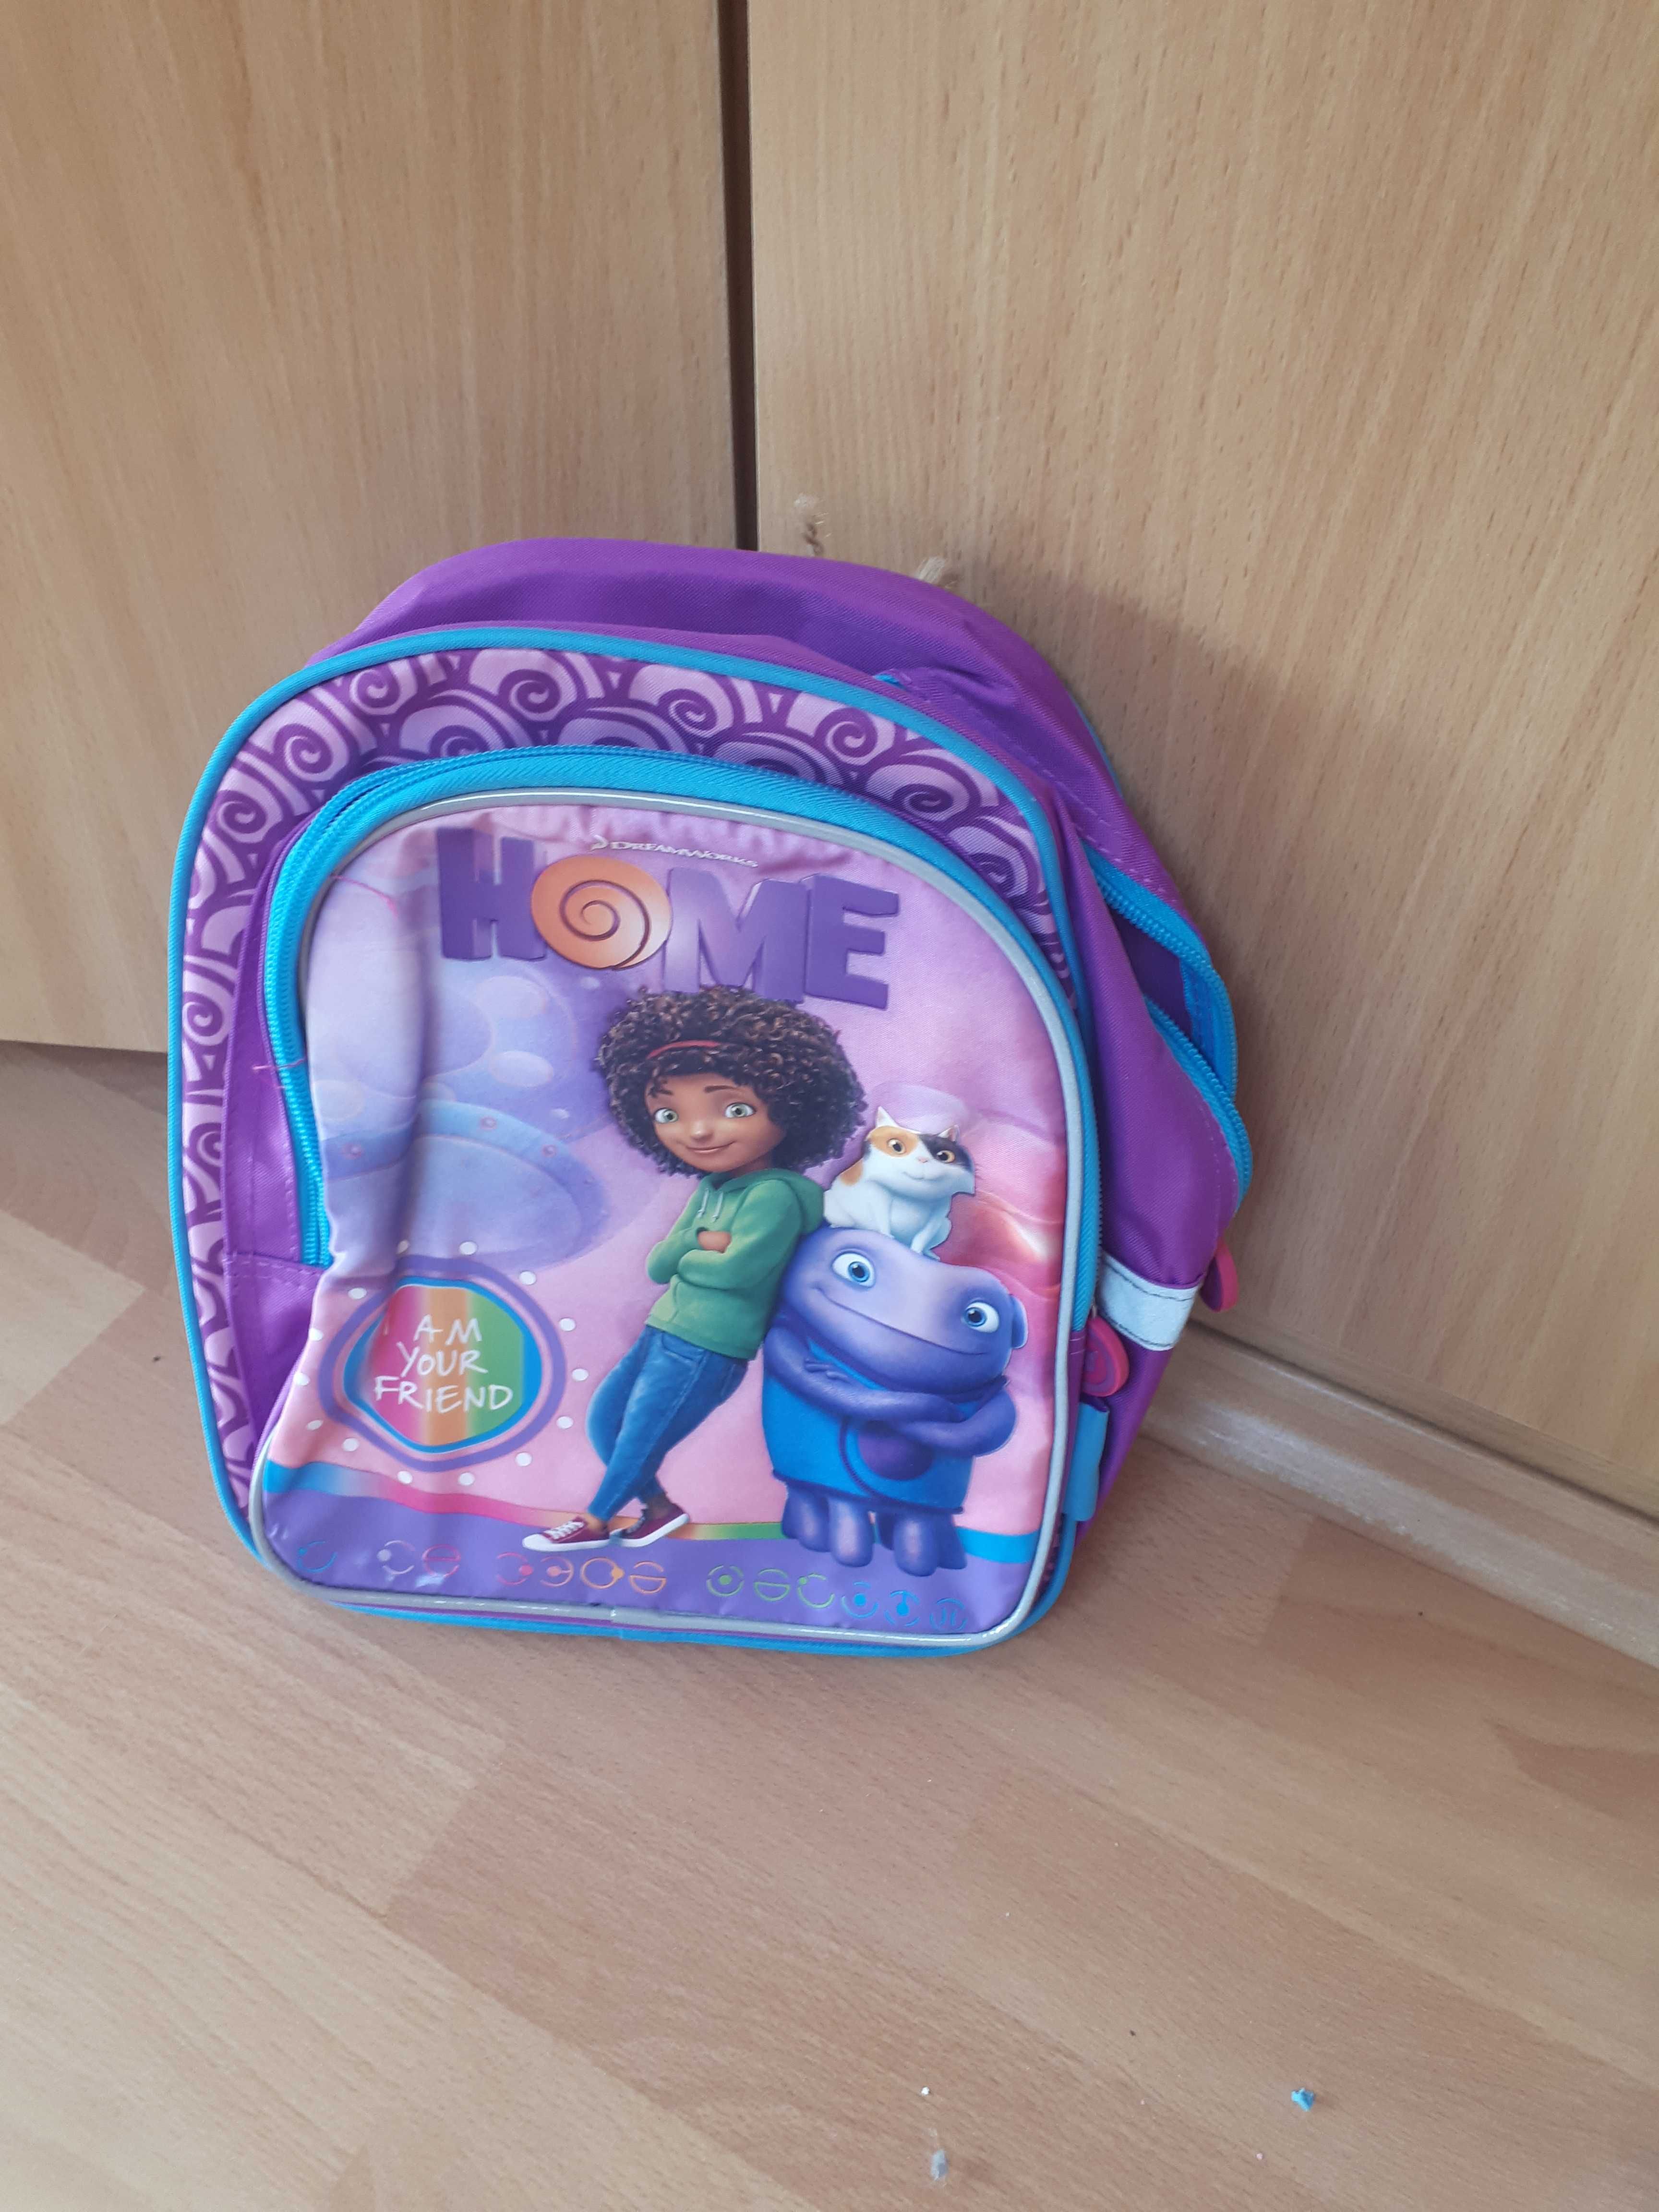 Plecak dla dzieci